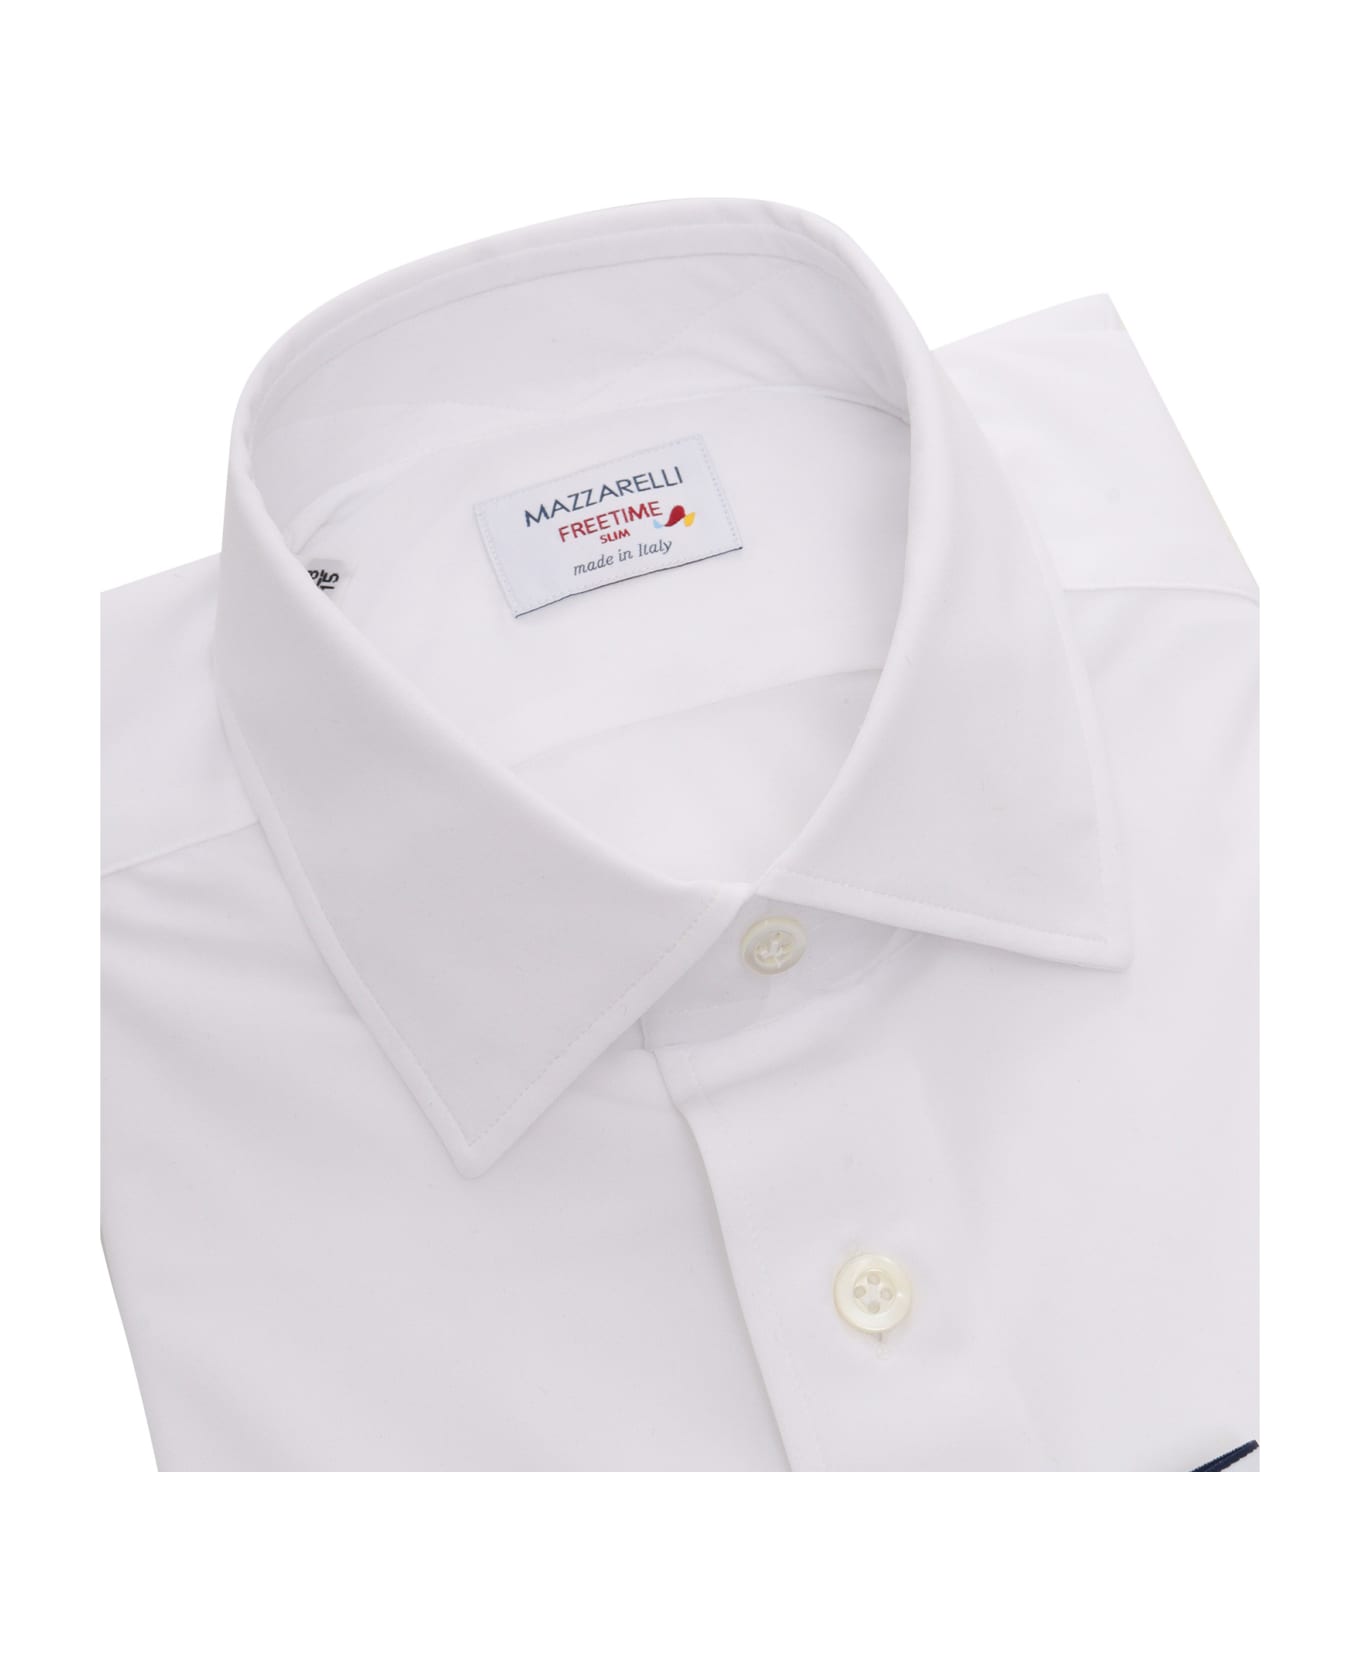 Mazzarelli White Shirt - WHITE シャツ